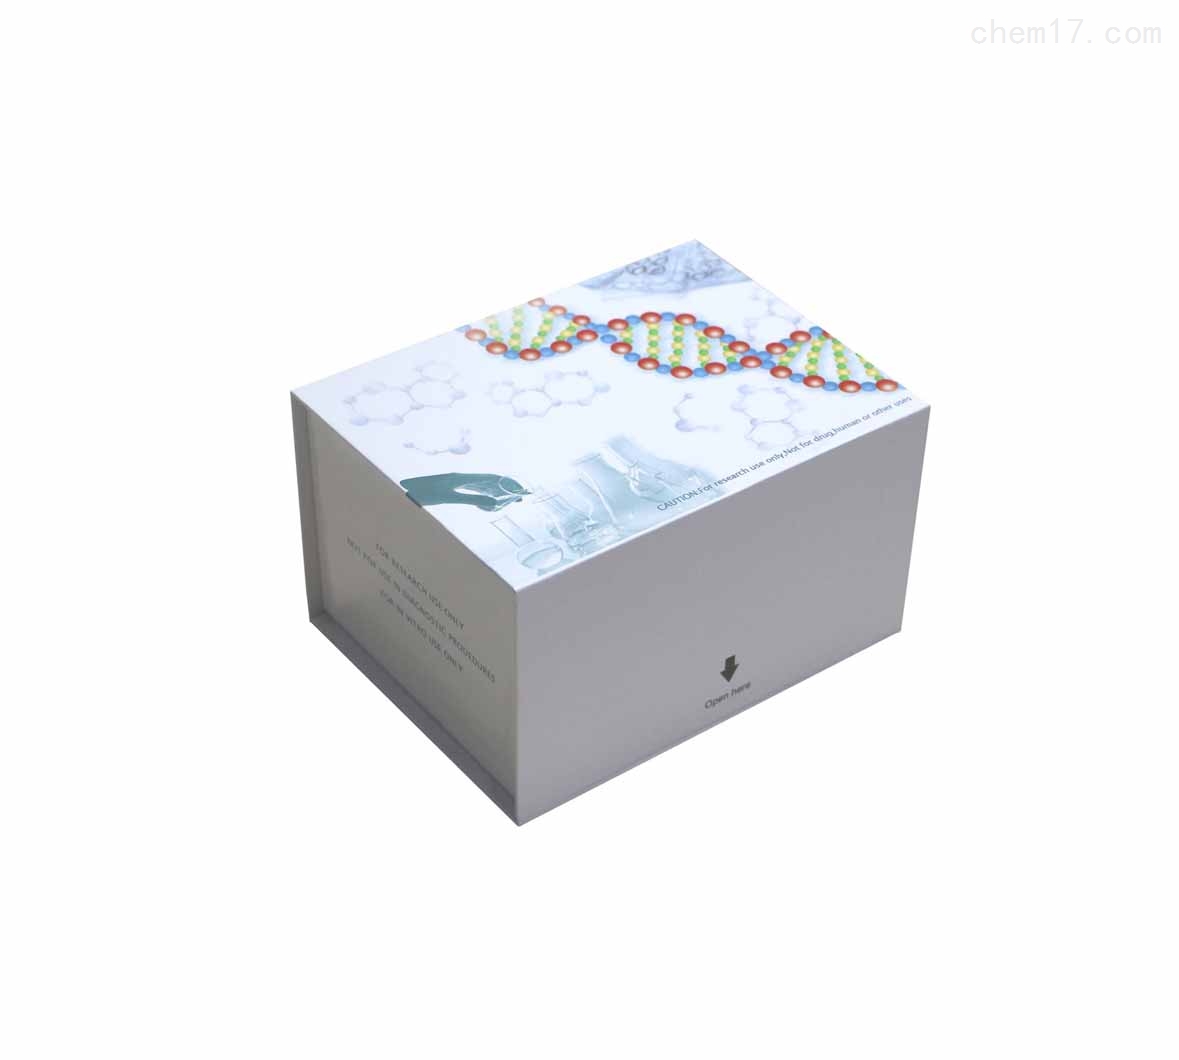 人性激素结合球蛋白(SHBG)ELISA试剂盒SCI文章